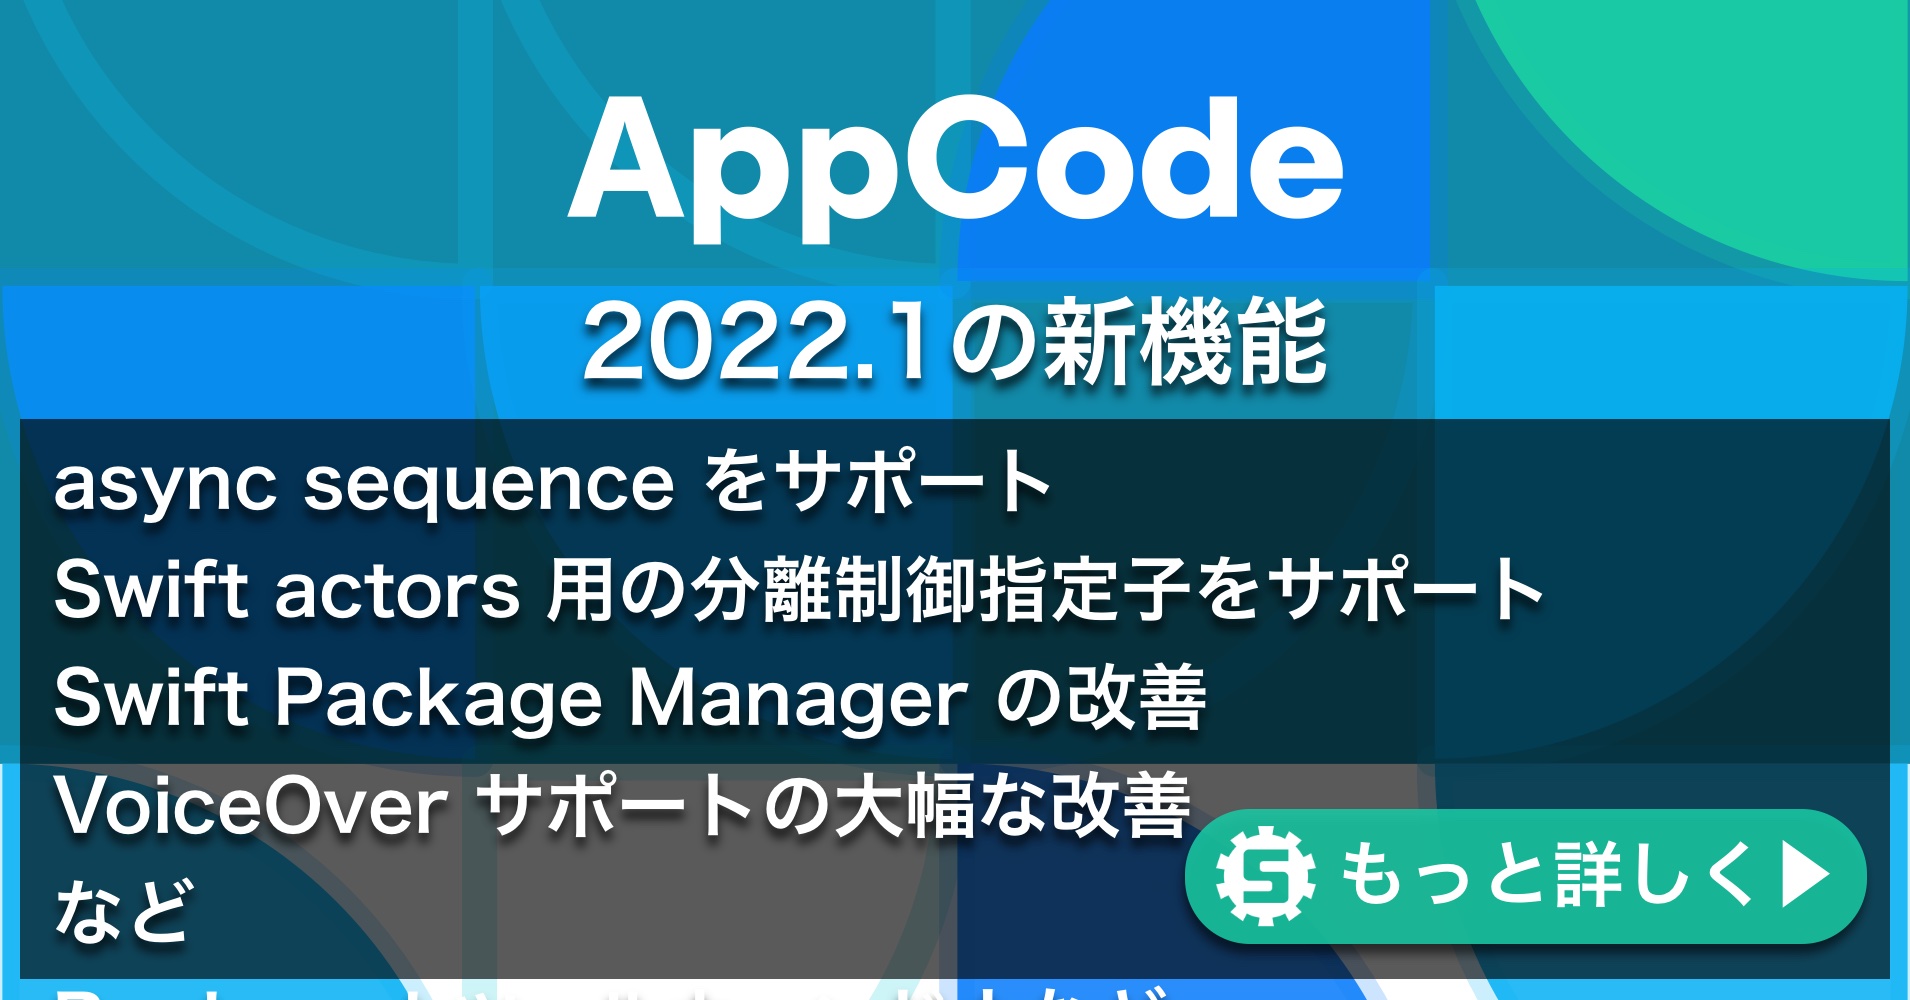 AppCode 2022.1の新機能